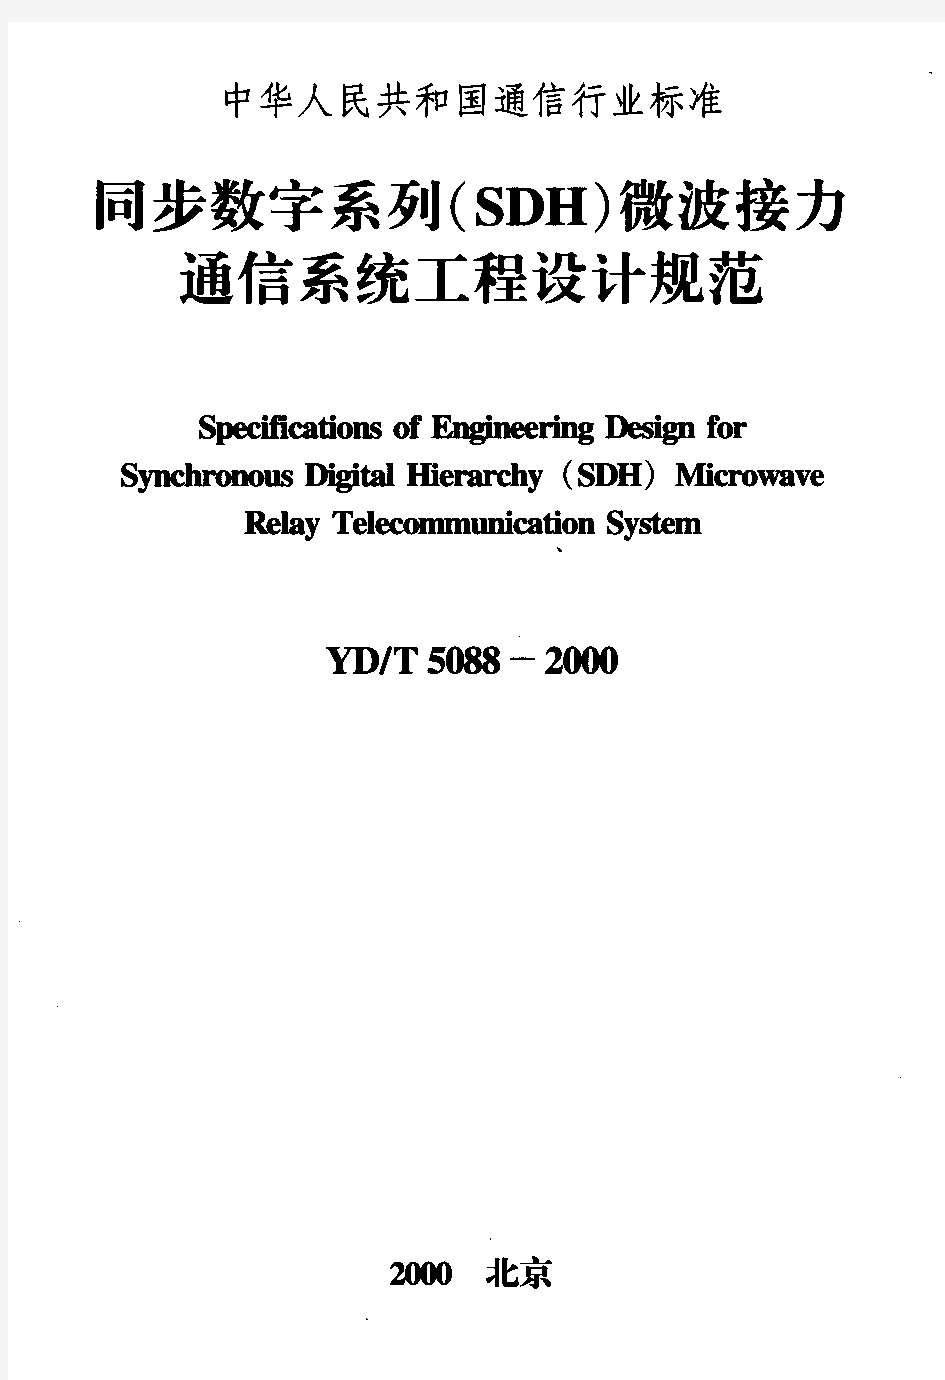 YDT5088-2000 同步数字系列(SDH)微波接力通信系统工程设计规范